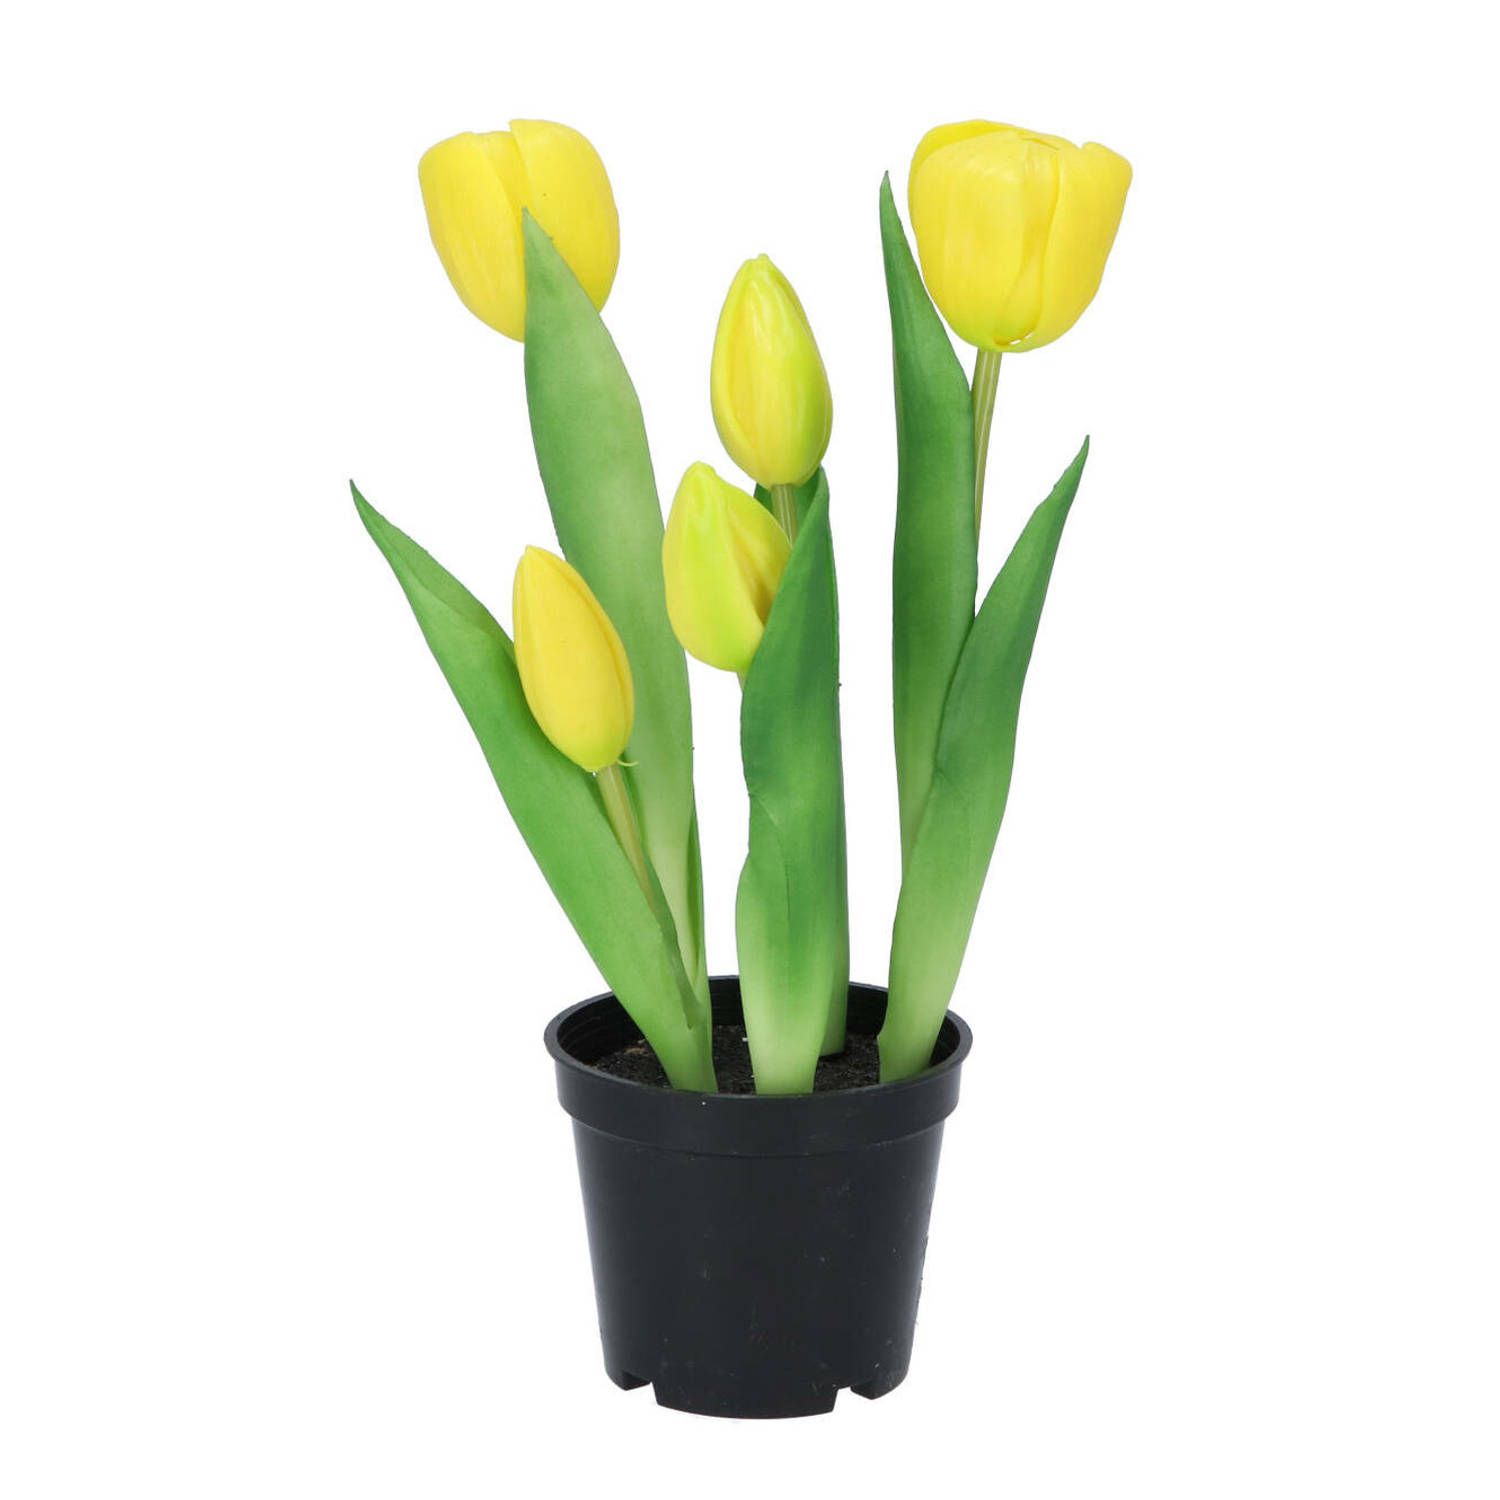 DK Design Kunst tulpen Holland in pot - 5x stuks - geel - real touch - 26 cm - levensechte kunstbloemen